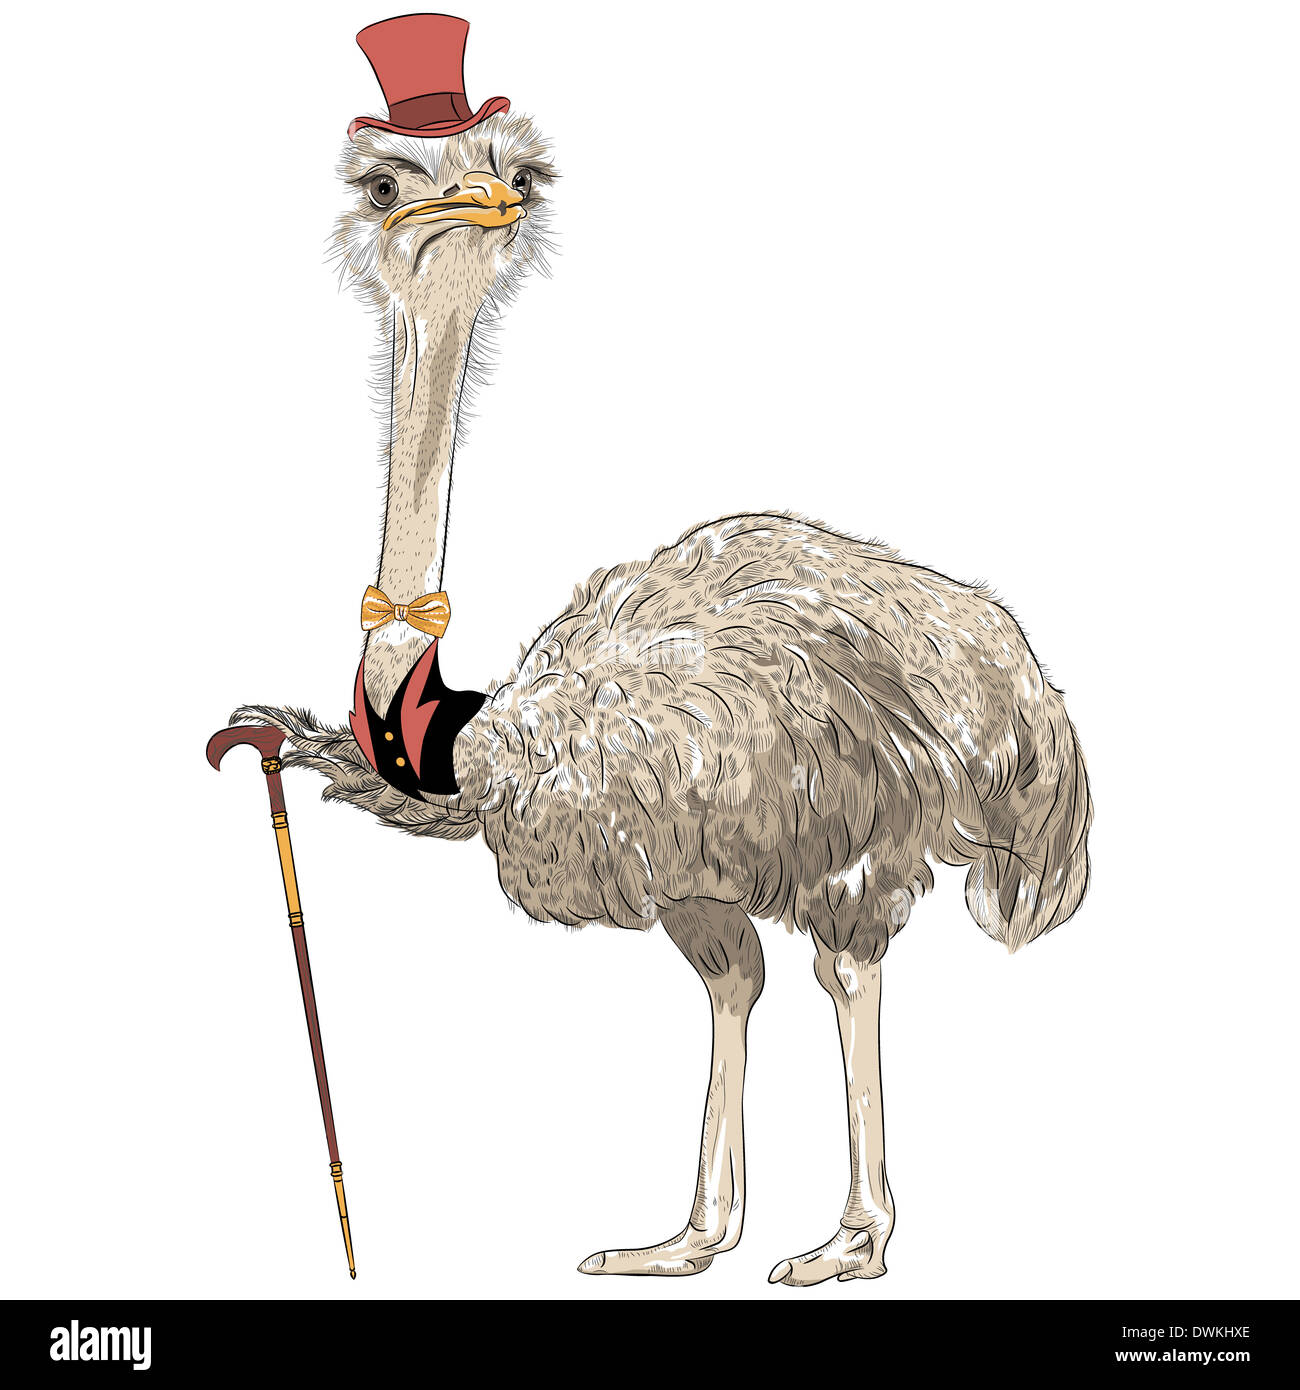 Resultado de imagen de ostrich with hat